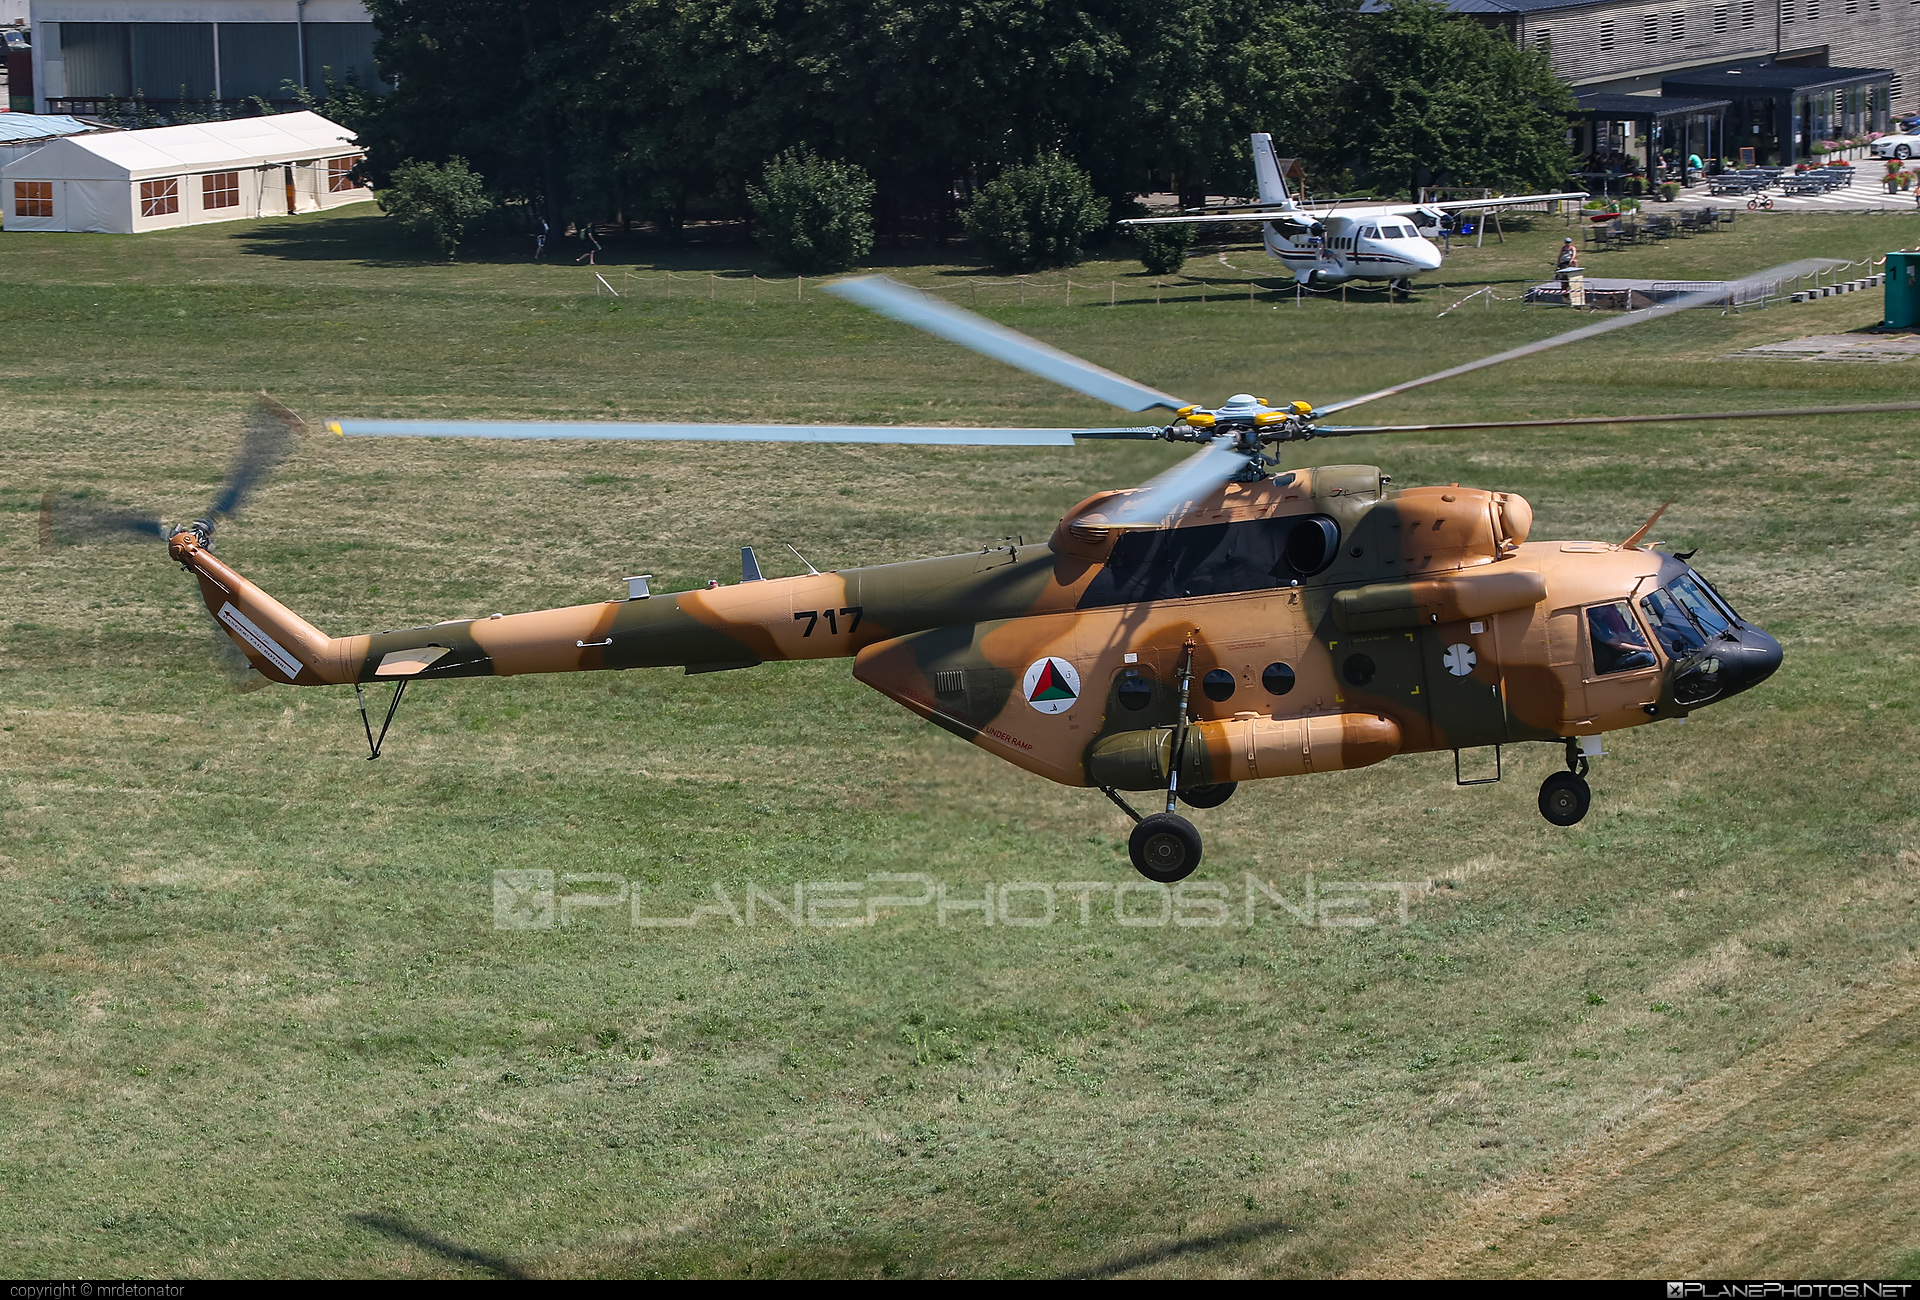 Mil Mi-17V-5 - 717 operated by Afghan Air Force #afghanairforce #mi17 #mi17v5 #mil #mil17 #milhelicopters